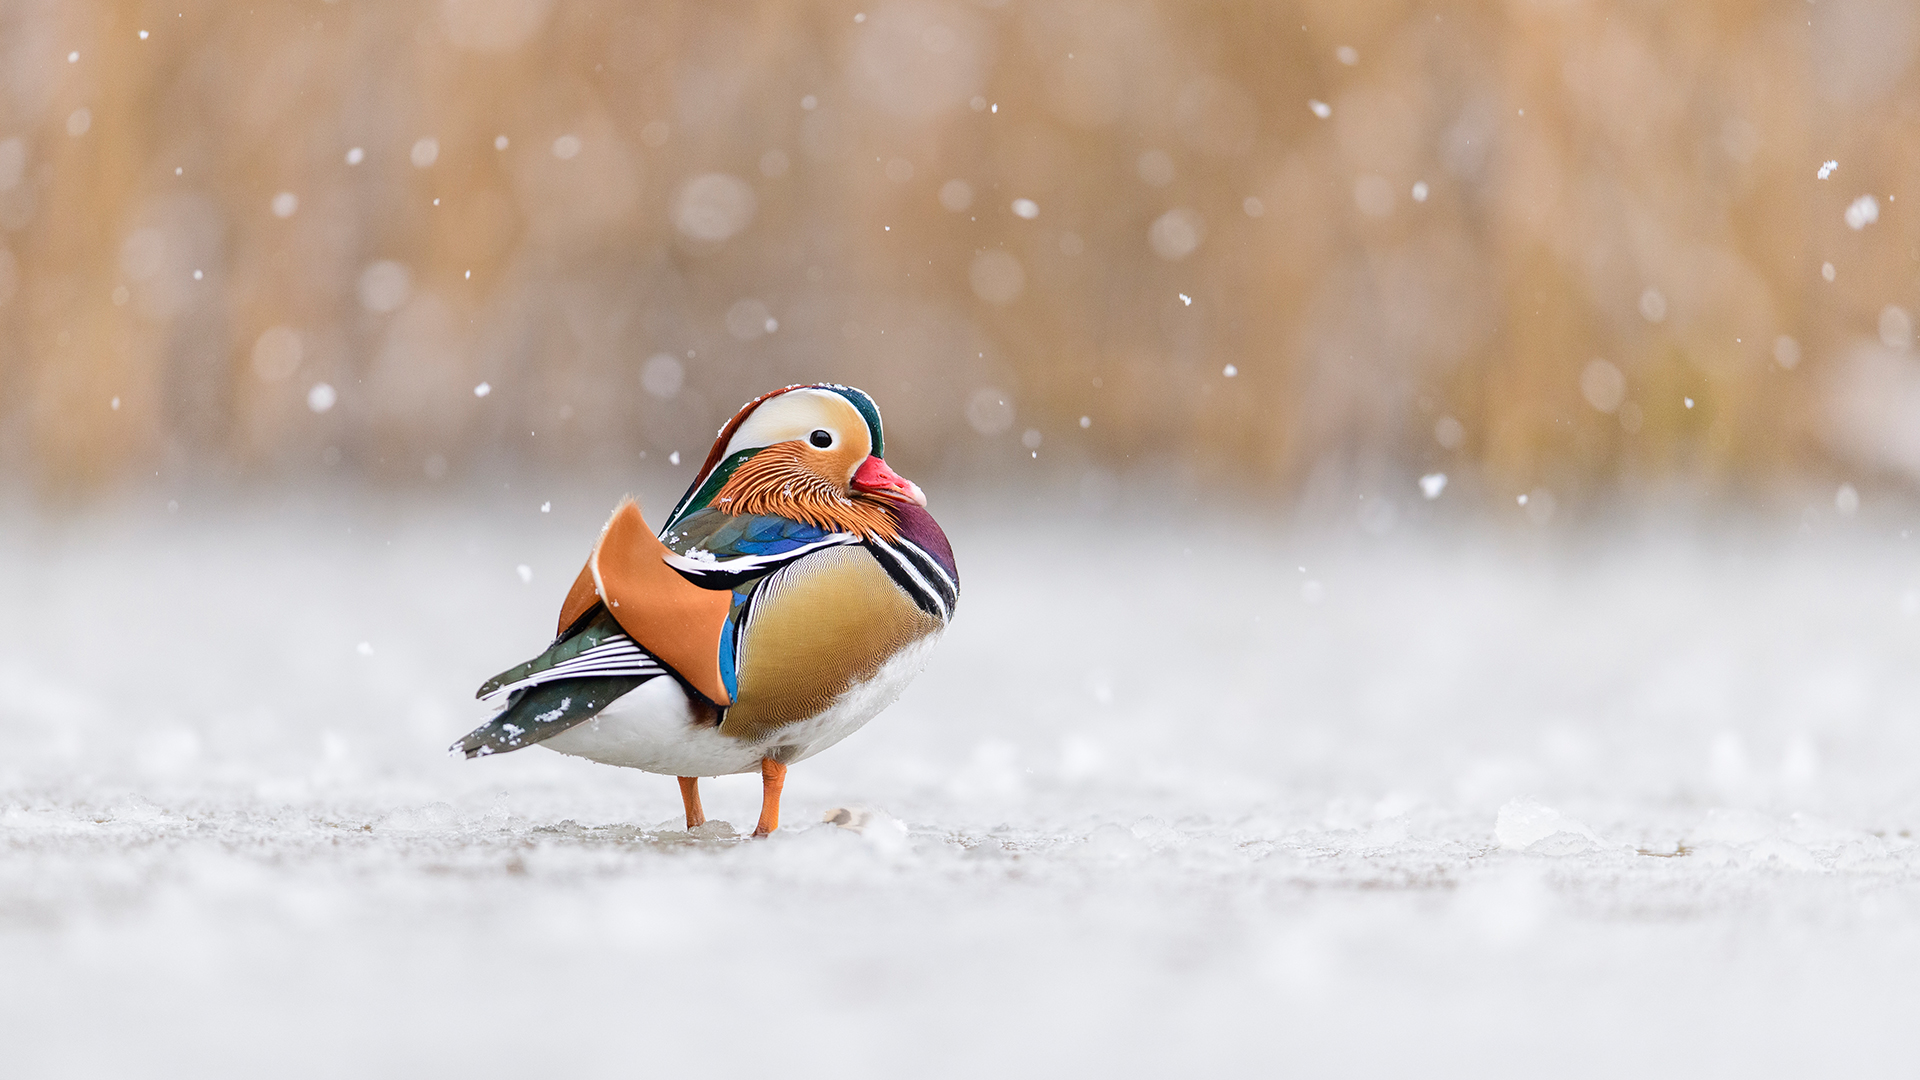 Mandarin duck, Richmond Park, London, England by Oscar Dewhurst